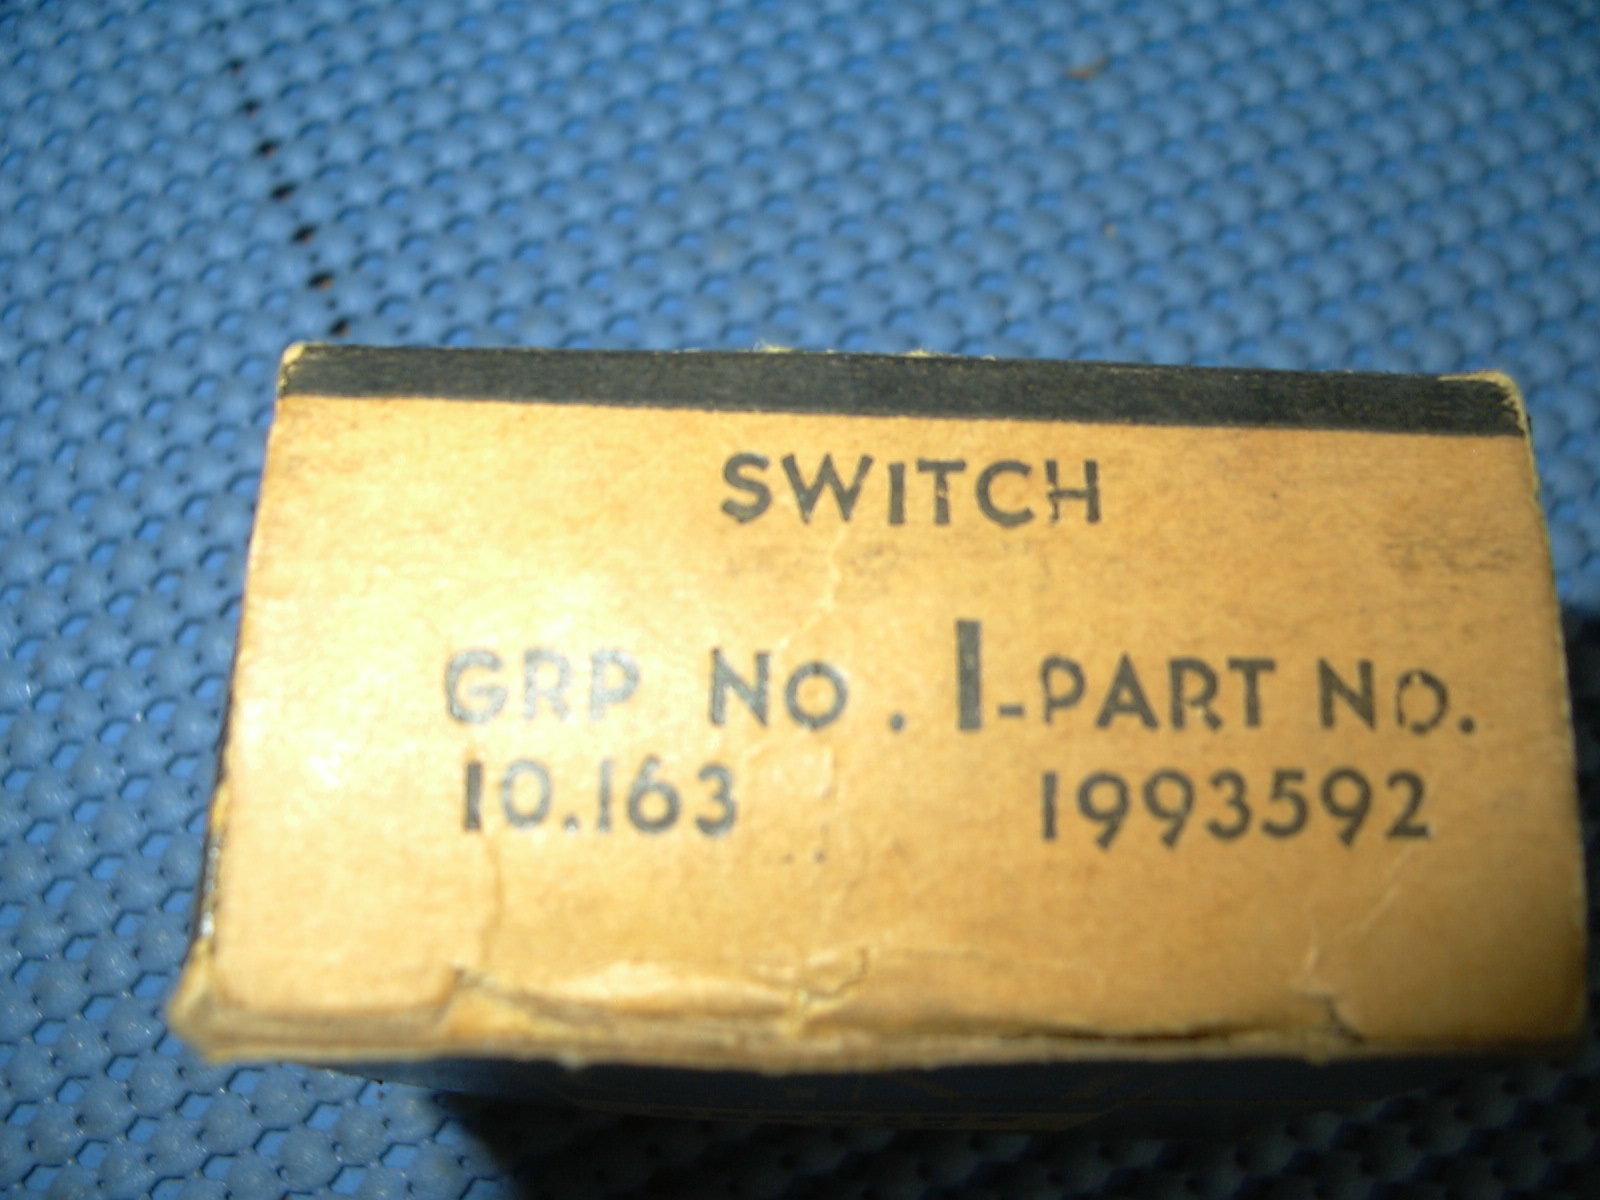 1963 Pontiac Windshield Wiper Switch NOS # 1993592